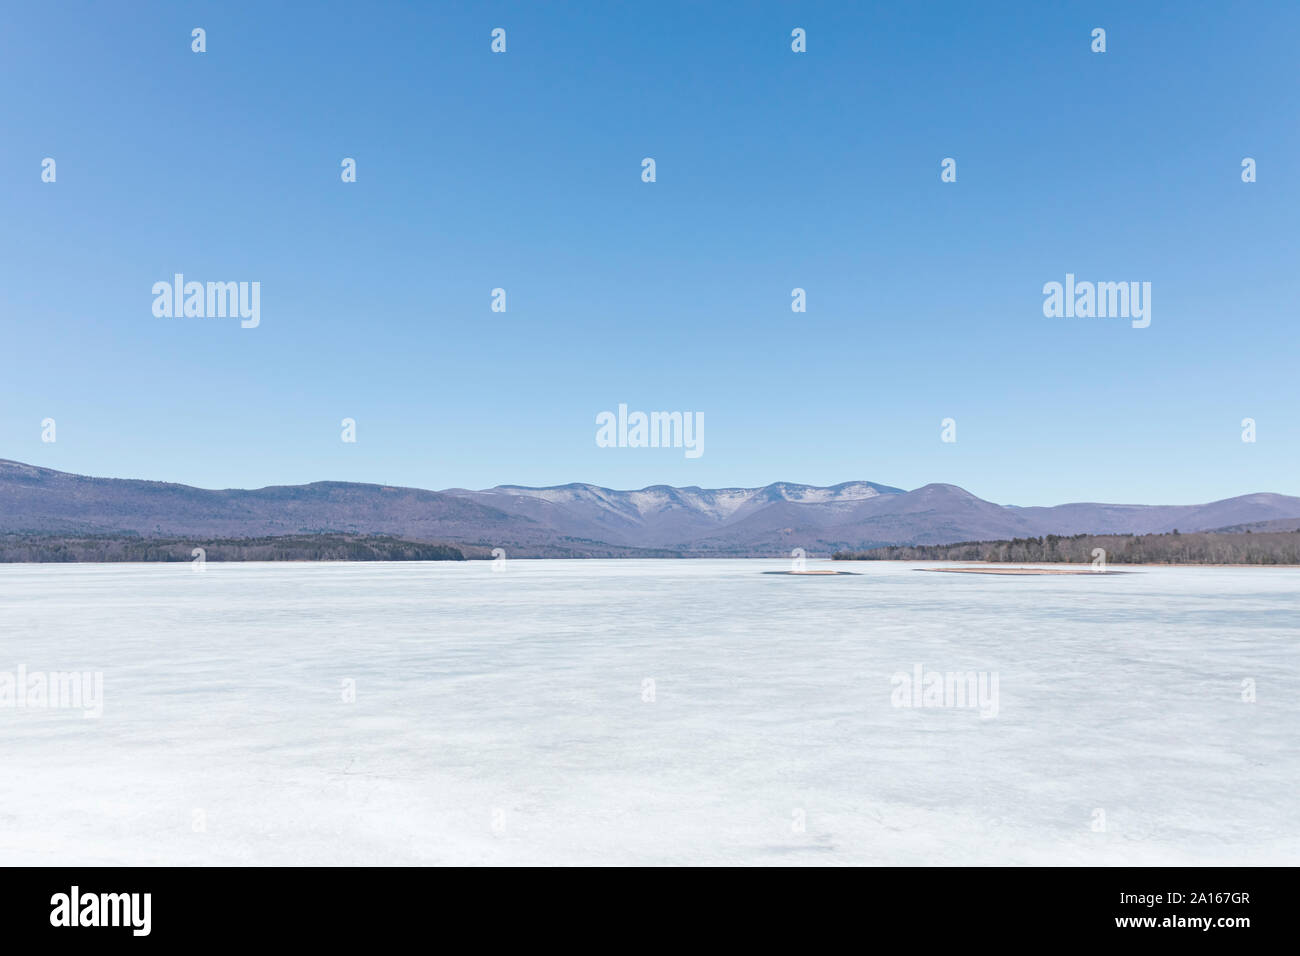 Vue panoramique de glace sur le réservoir Ashokan approvisionne contre ciel bleu clair Banque D'Images